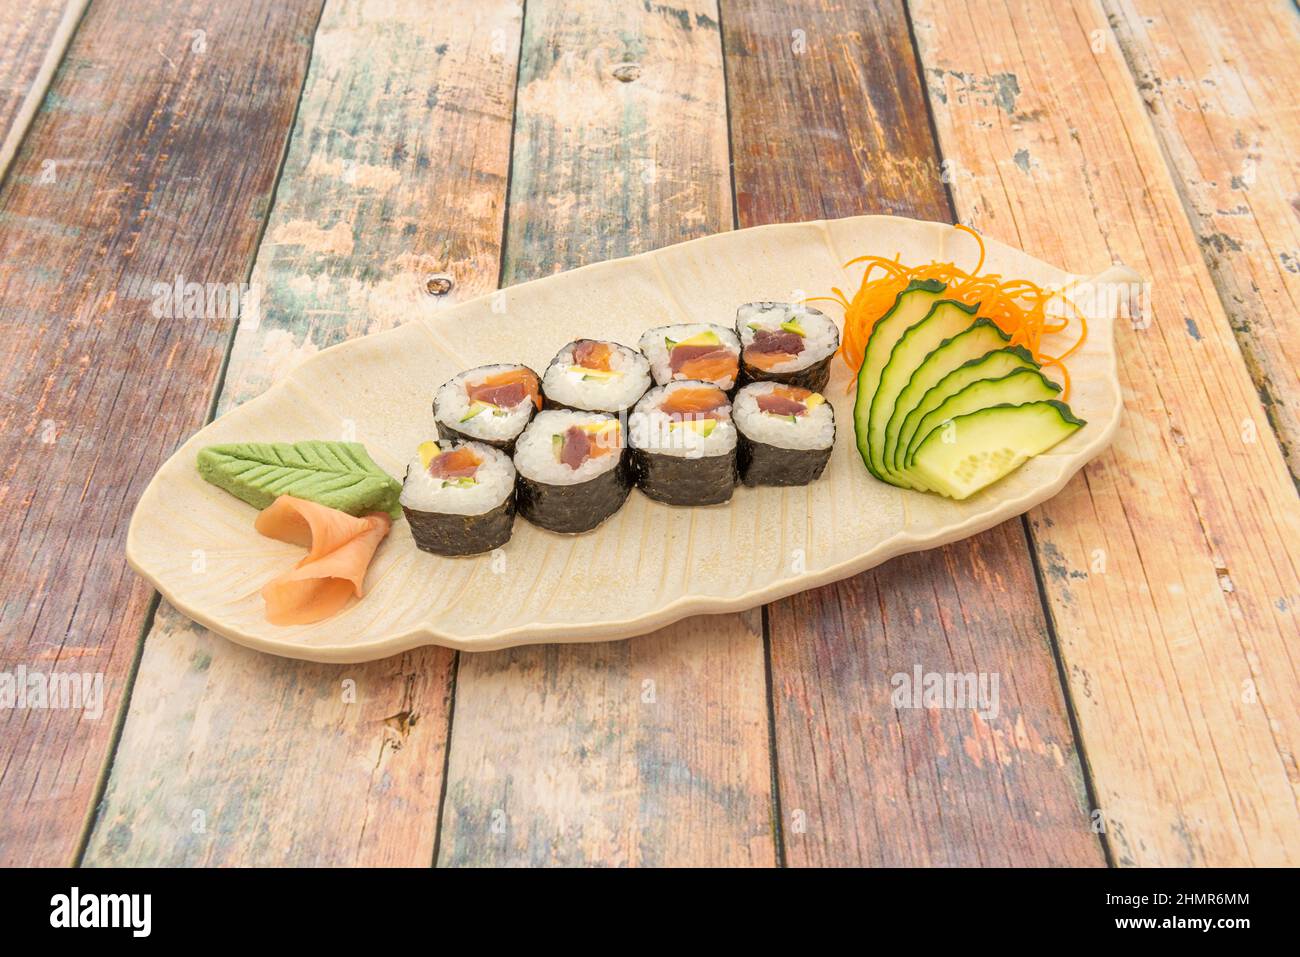 Le sushi Maki est donc un rouleau d'algues de nori rempli de riz et d'ingrédients différents tels que le poisson, les crustacés, les fruits ou les légumes. Ces délicio Banque D'Images